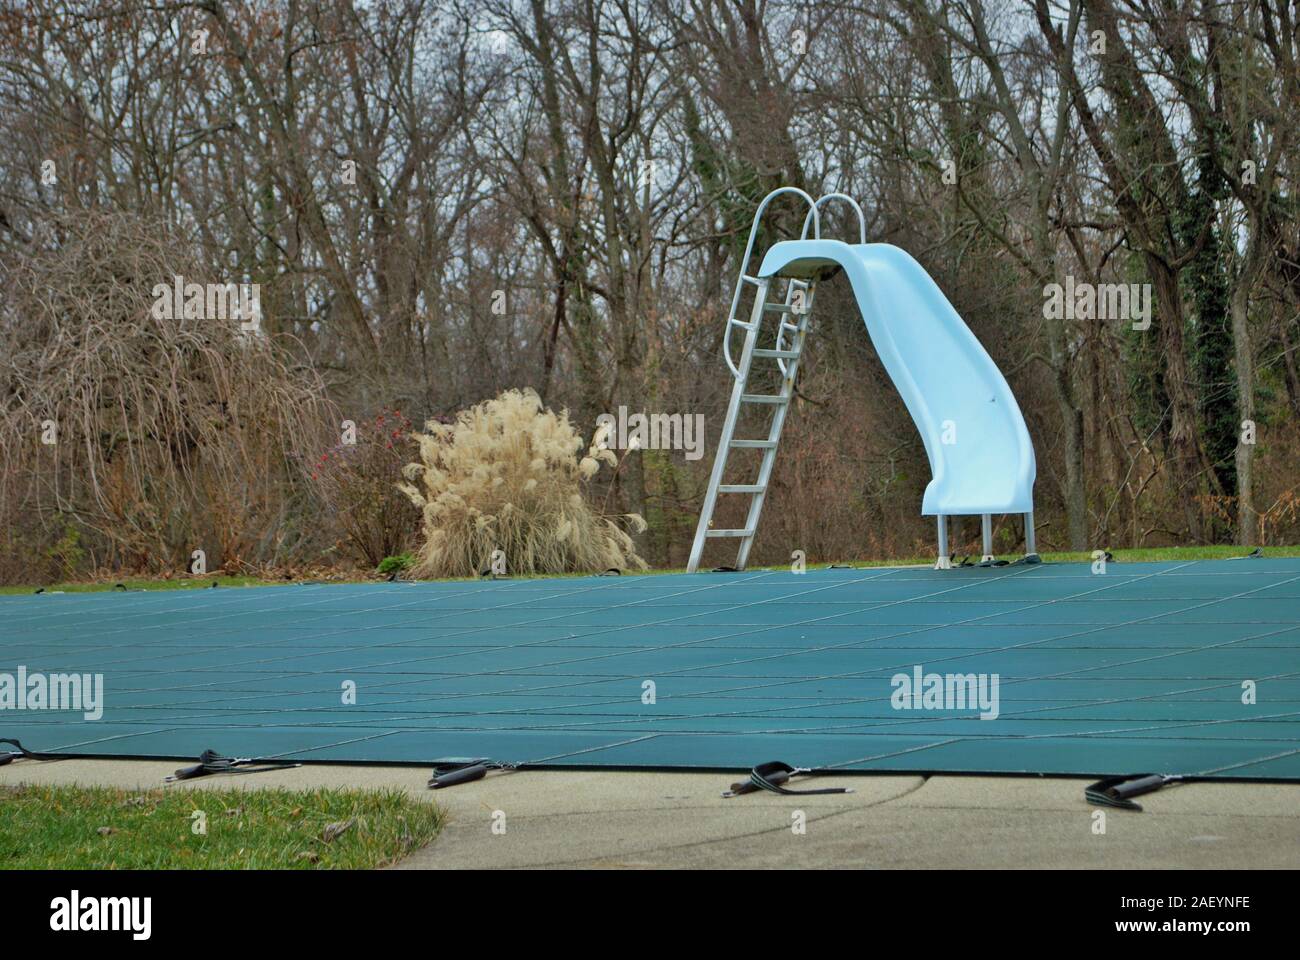 Garten Swimmingpool mit Sprungbrett und pool Folie tarped und geschlossen für den Winter Stockfoto